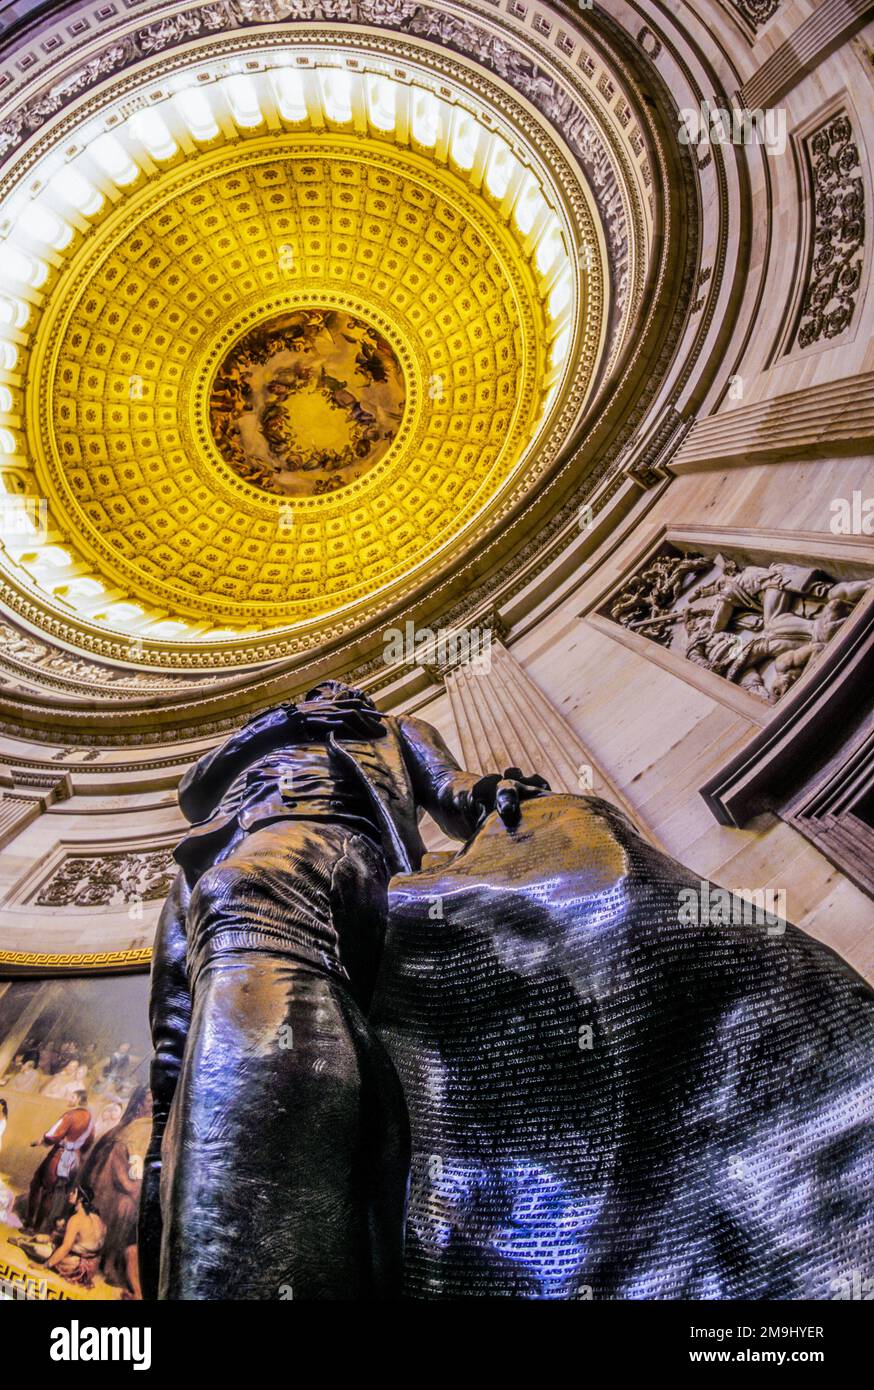 ÉTATS-UNIS Intérieur du Capitole avec statue de George Washington, Washington D.C., États-Unis Banque D'Images